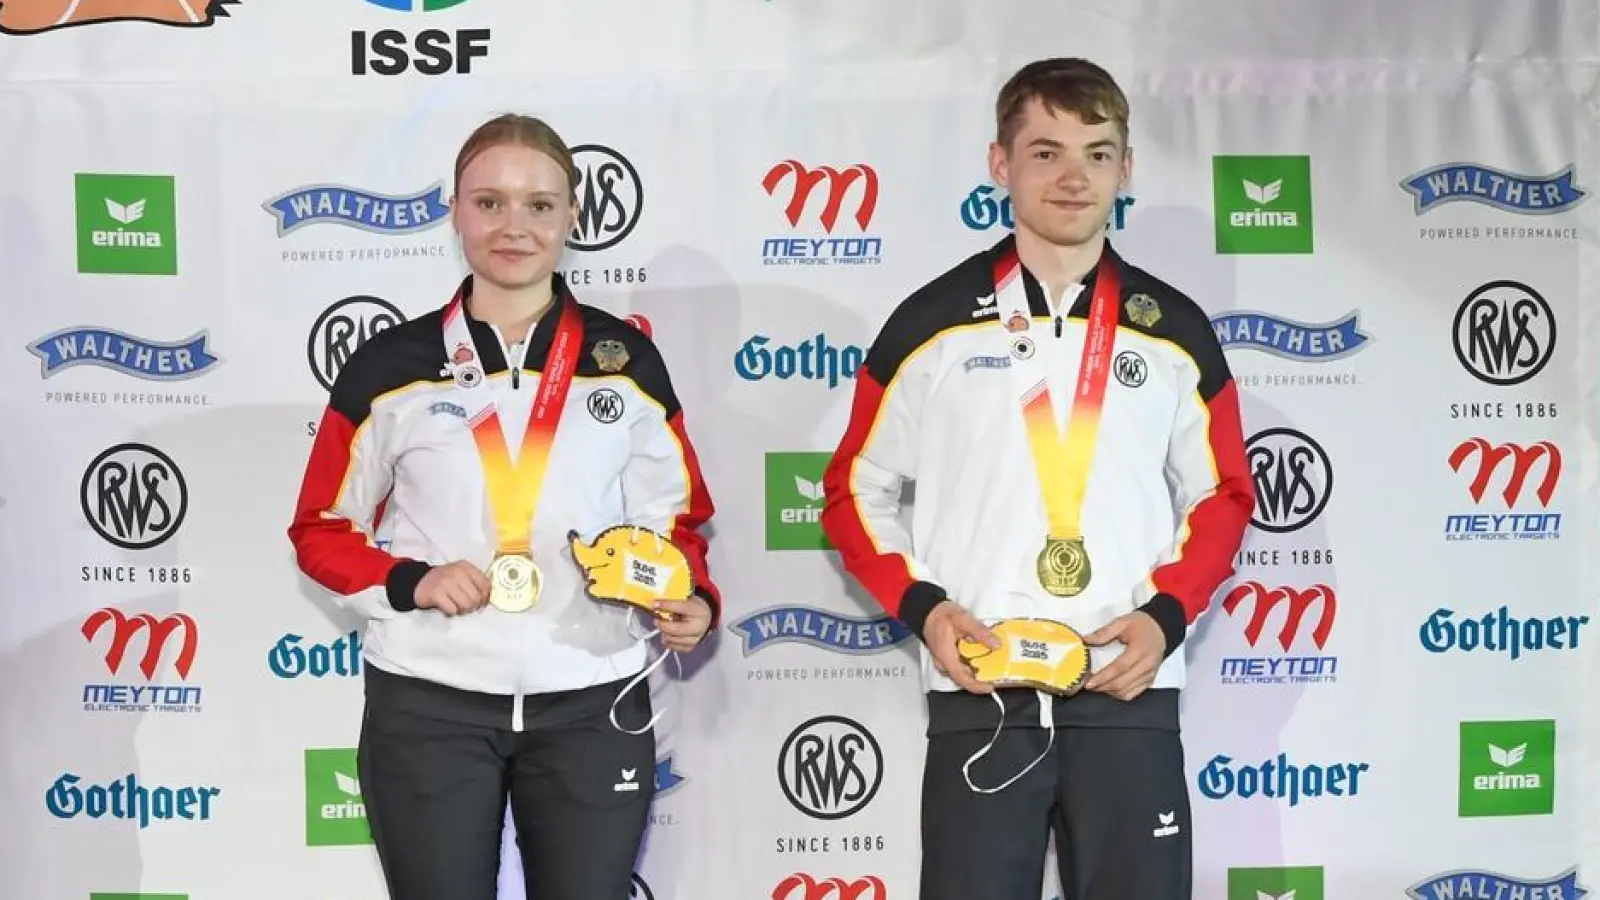 Mit Goldmedaille: Justus Ott gewann mit Nele stark den Teamwettbewerb mit der Kleinkaliberbüchse in Suhl. (Foto: Jürgen Heise)